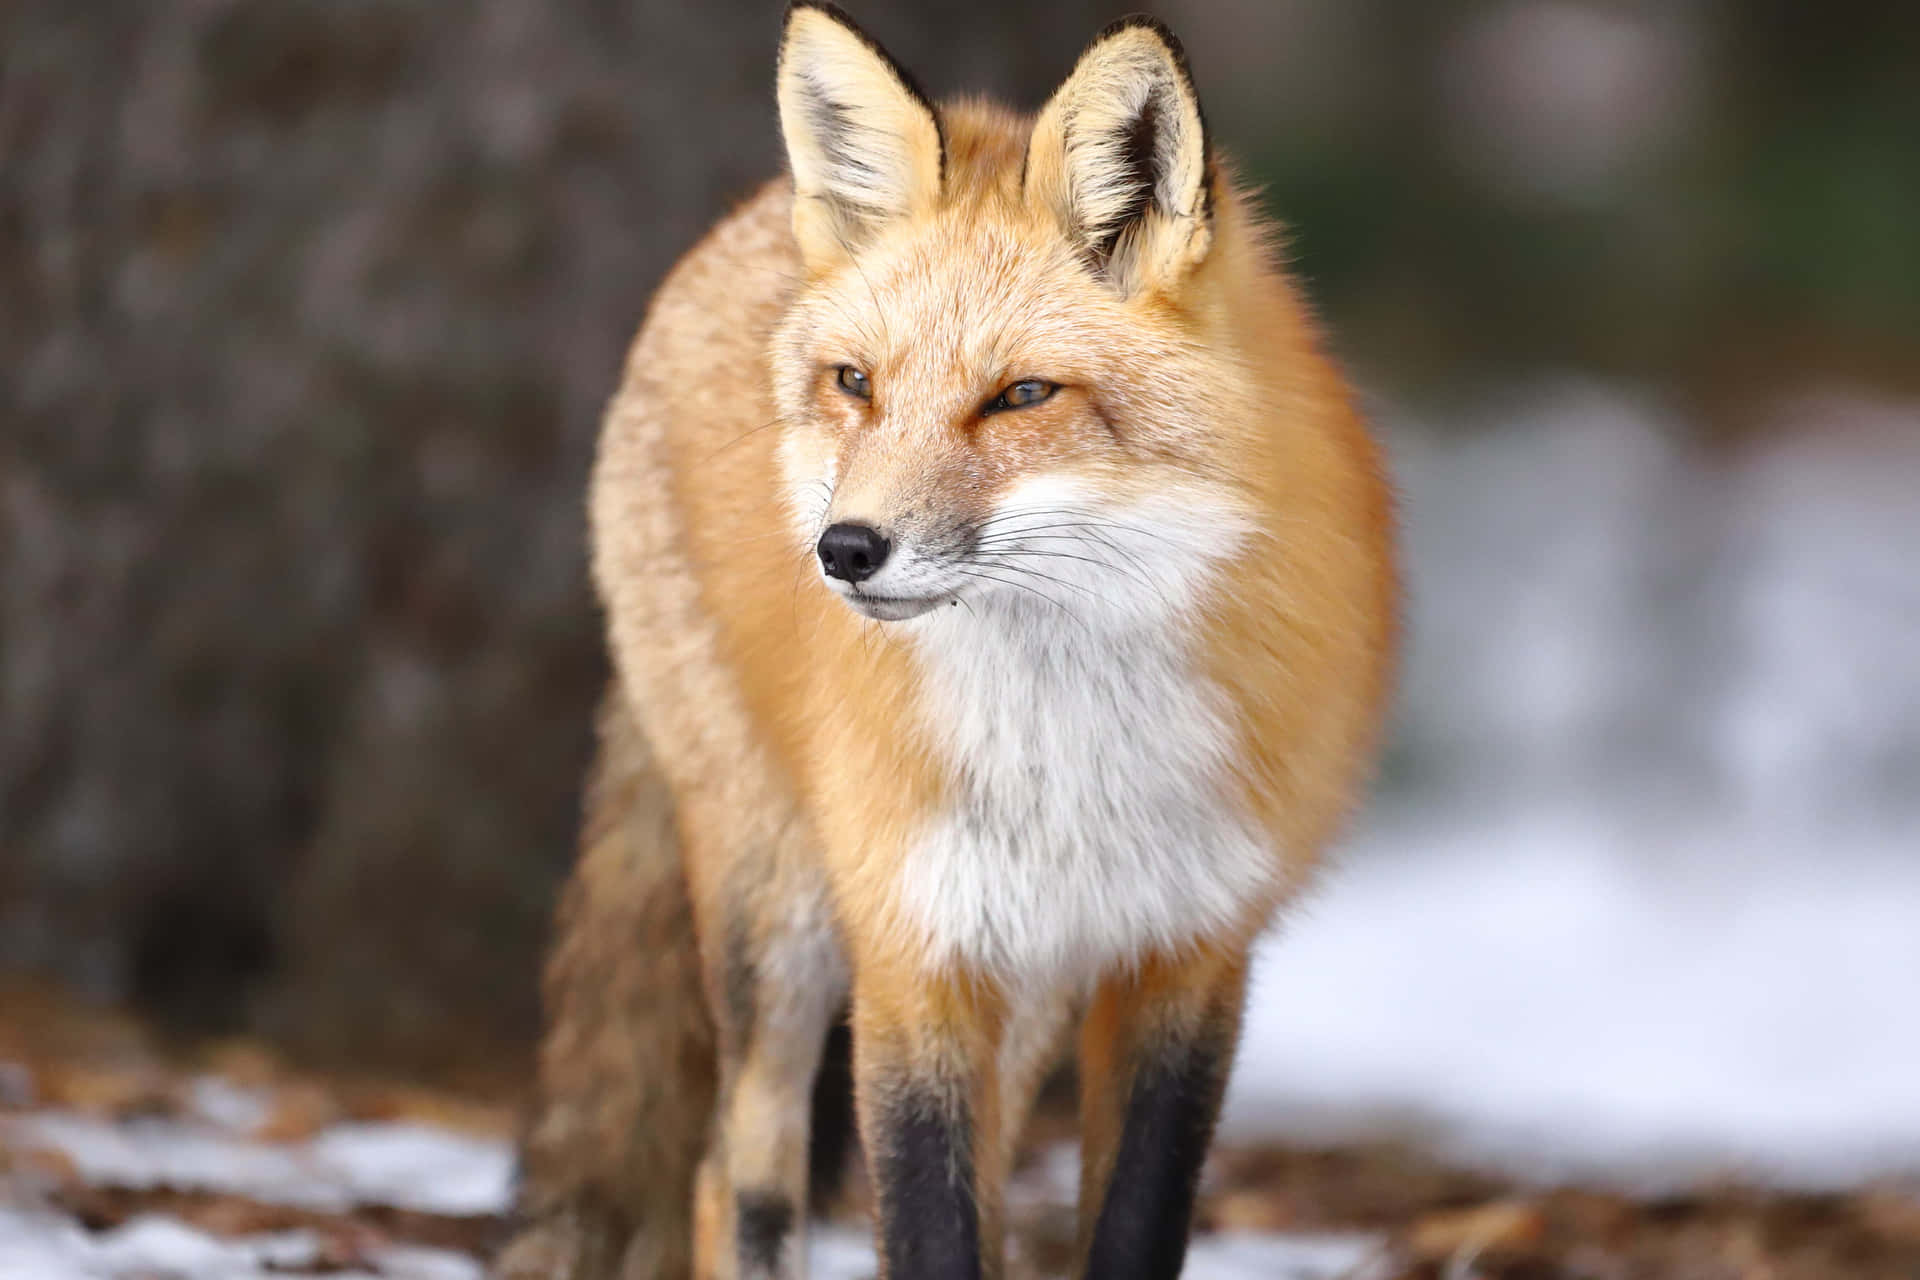 Einintelligenter Roter Fuchs In Freier Wildbahn